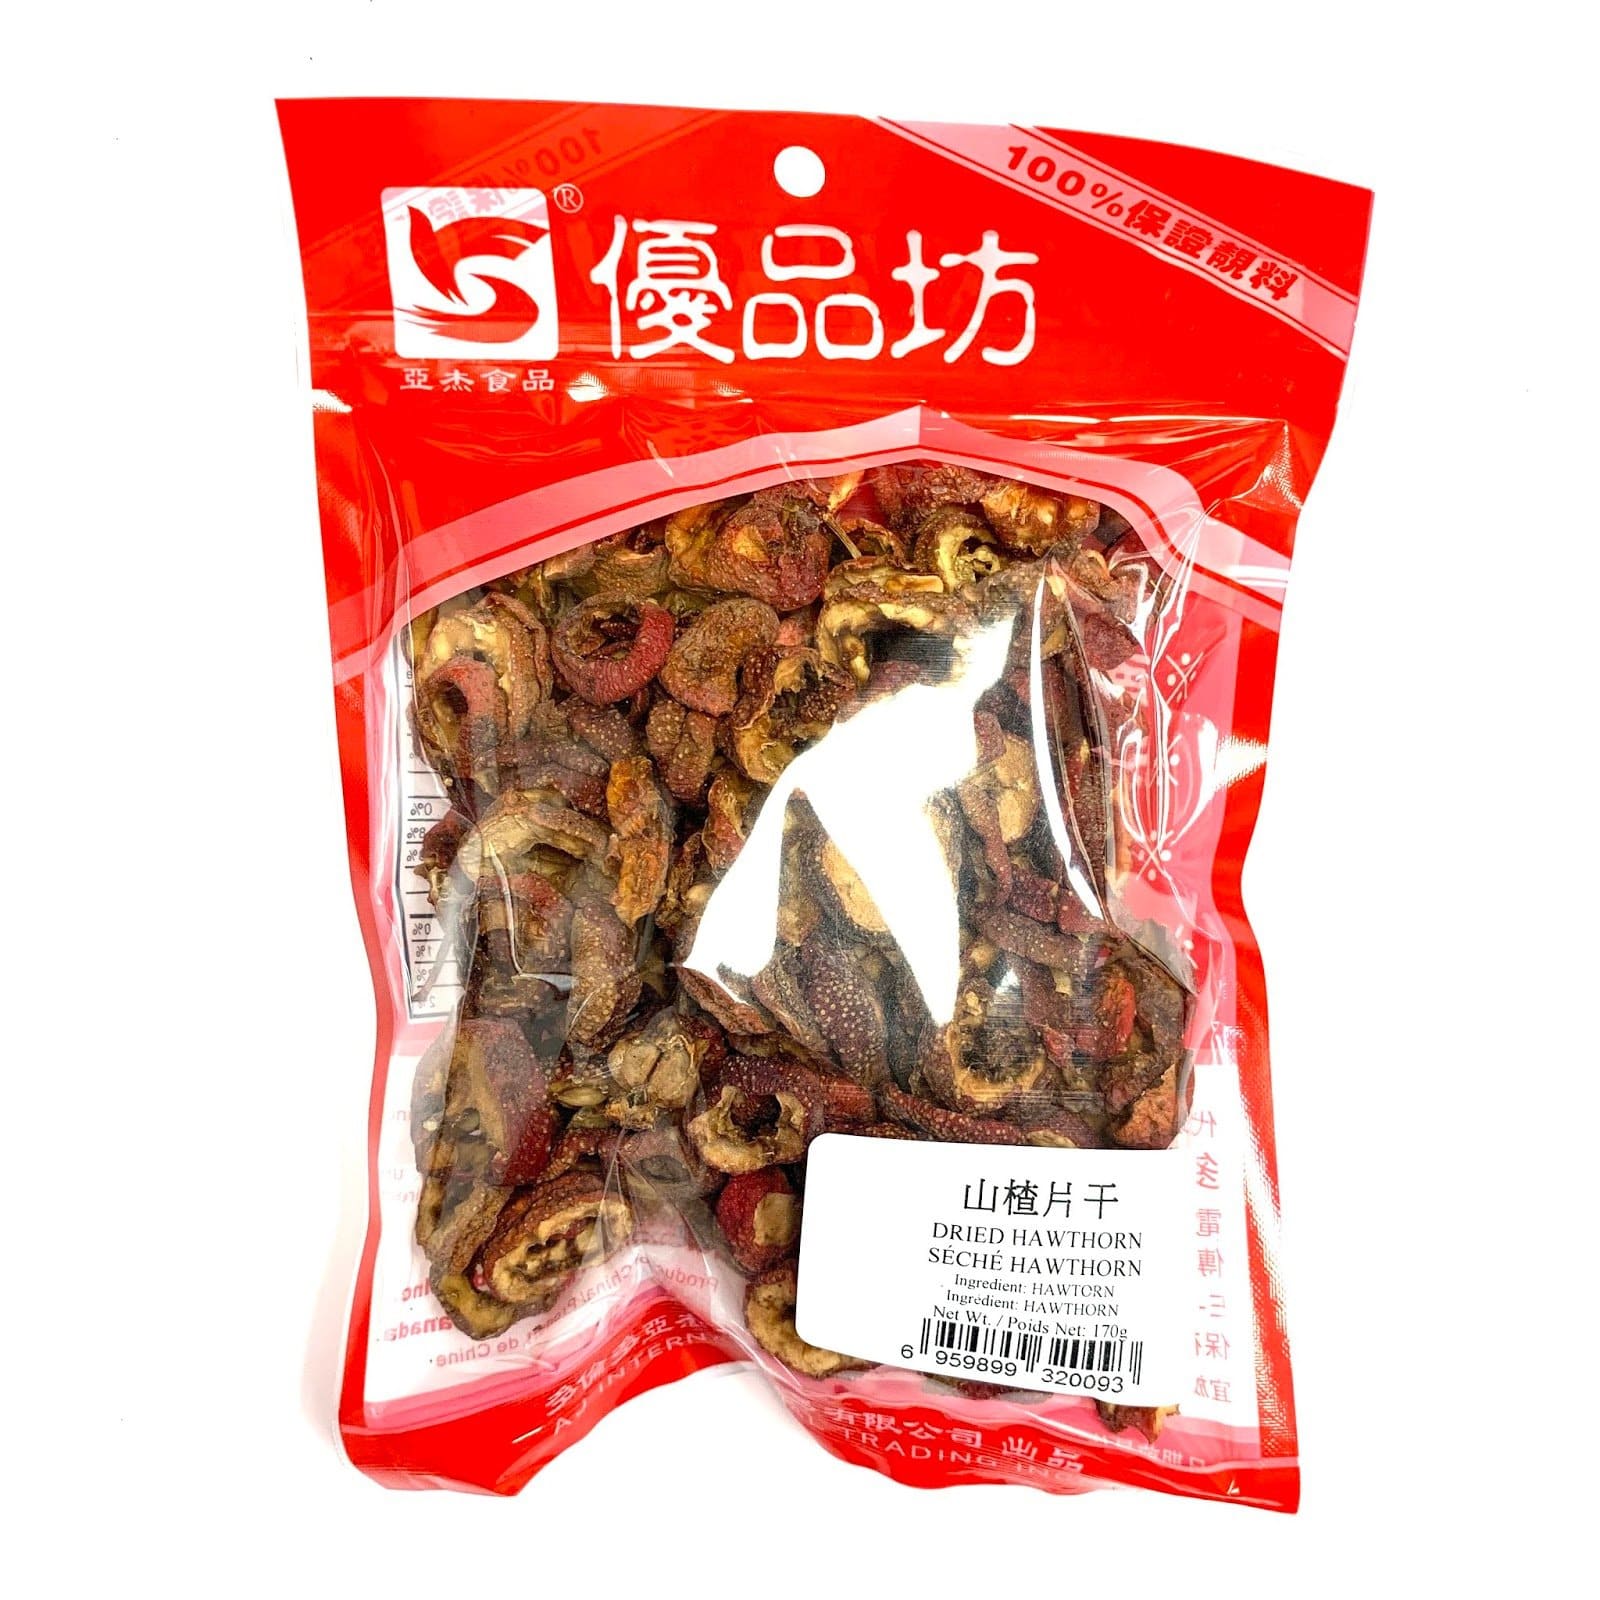 优品坊 山楂片干 Dried Sliced Haw 170g